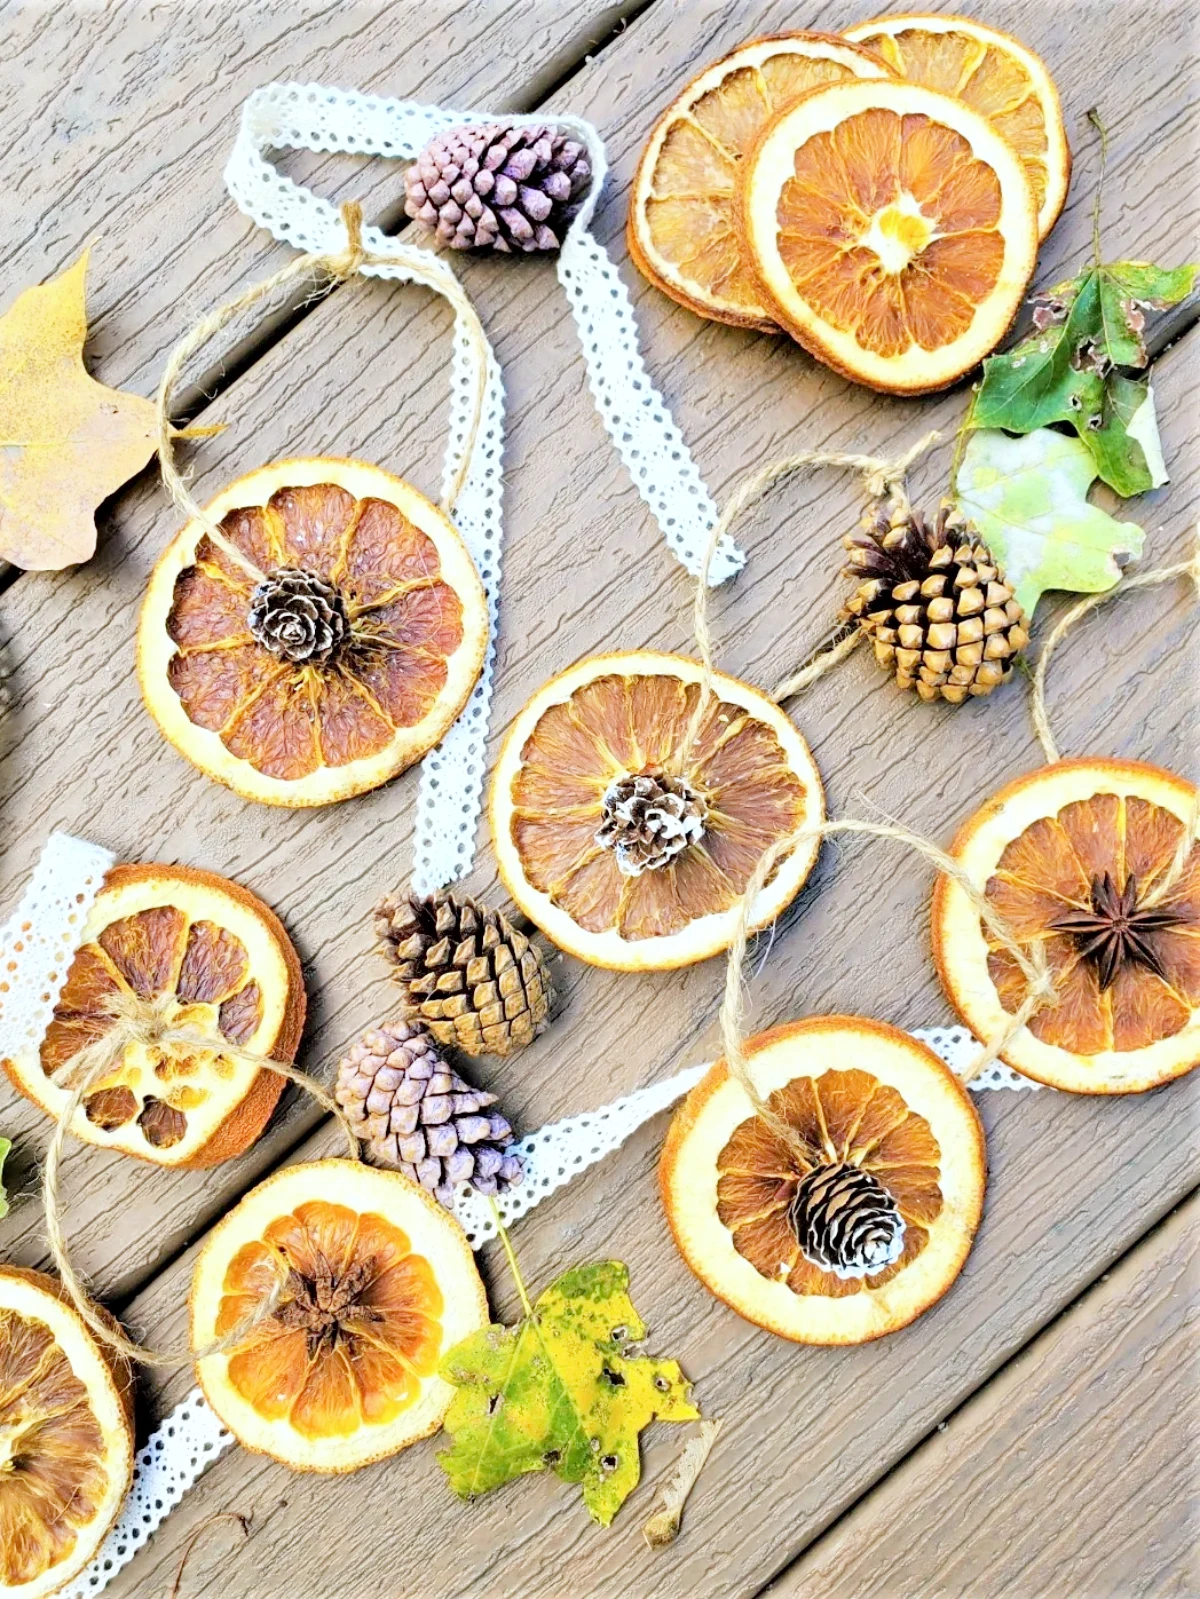 decoration avec des oranges sechees gurilande